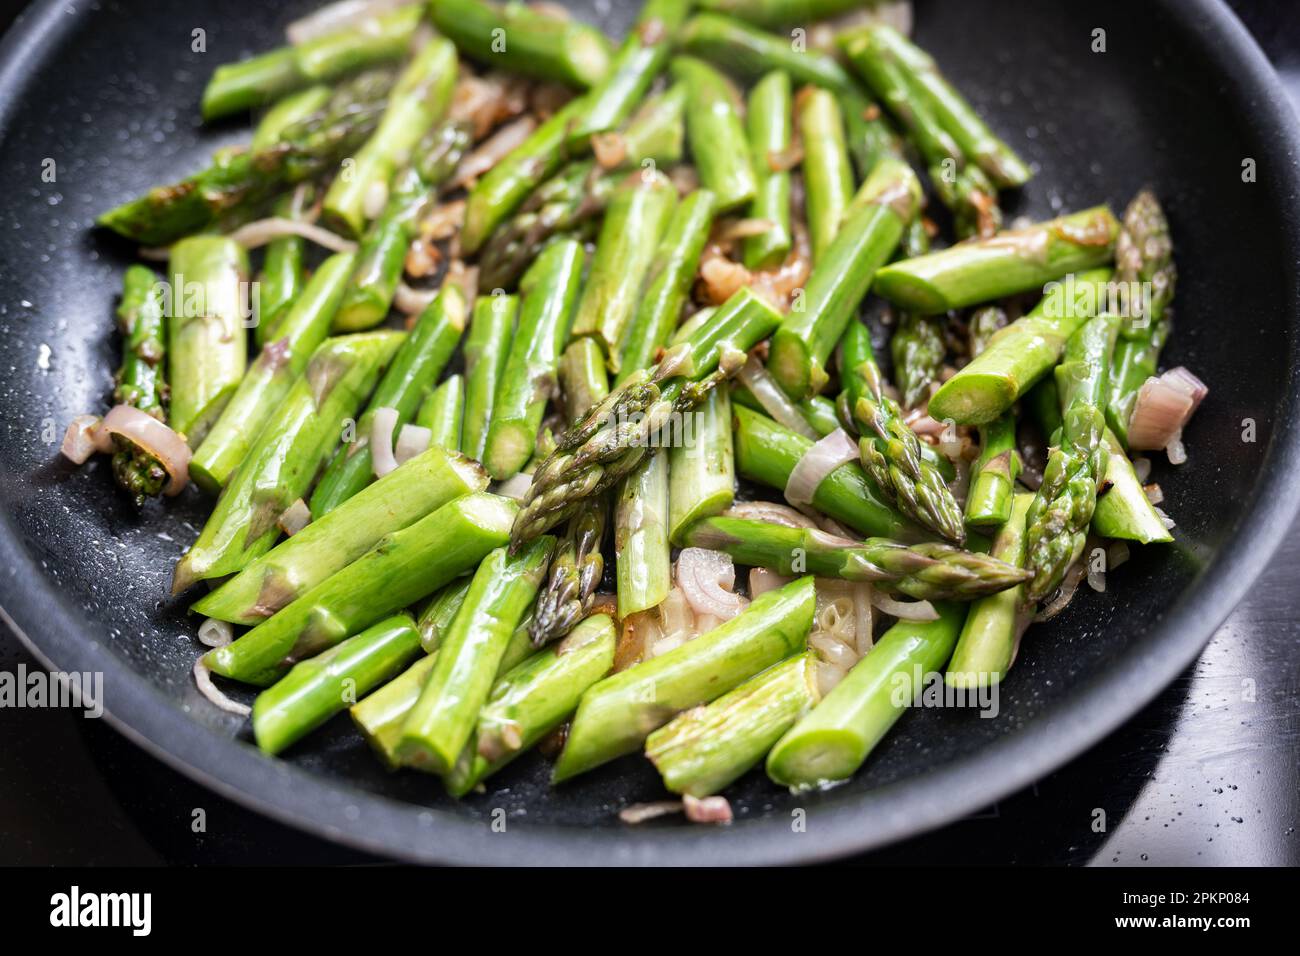 Morceaux d'asperges vertes avec oignon dans une poêle noire, concept de cuisson pour repas végétarien avec légumes du printemps, sélection, na Banque D'Images